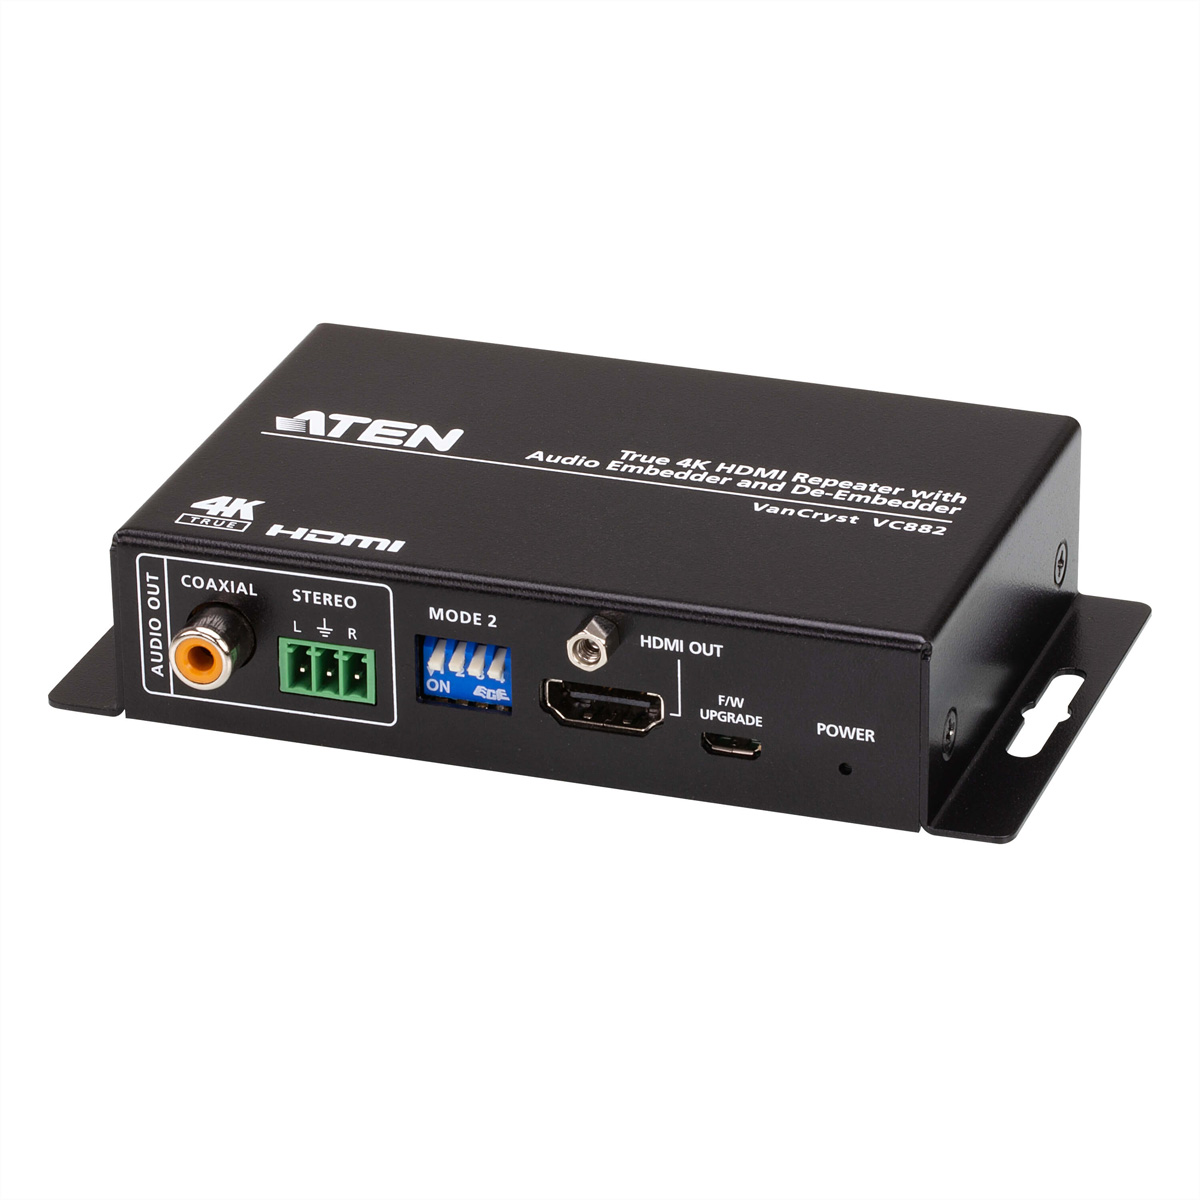 ATEN VC882 True HDMI Audio HDMI-Verlängerung Repeater De-Embedder mit und Embedder 4K